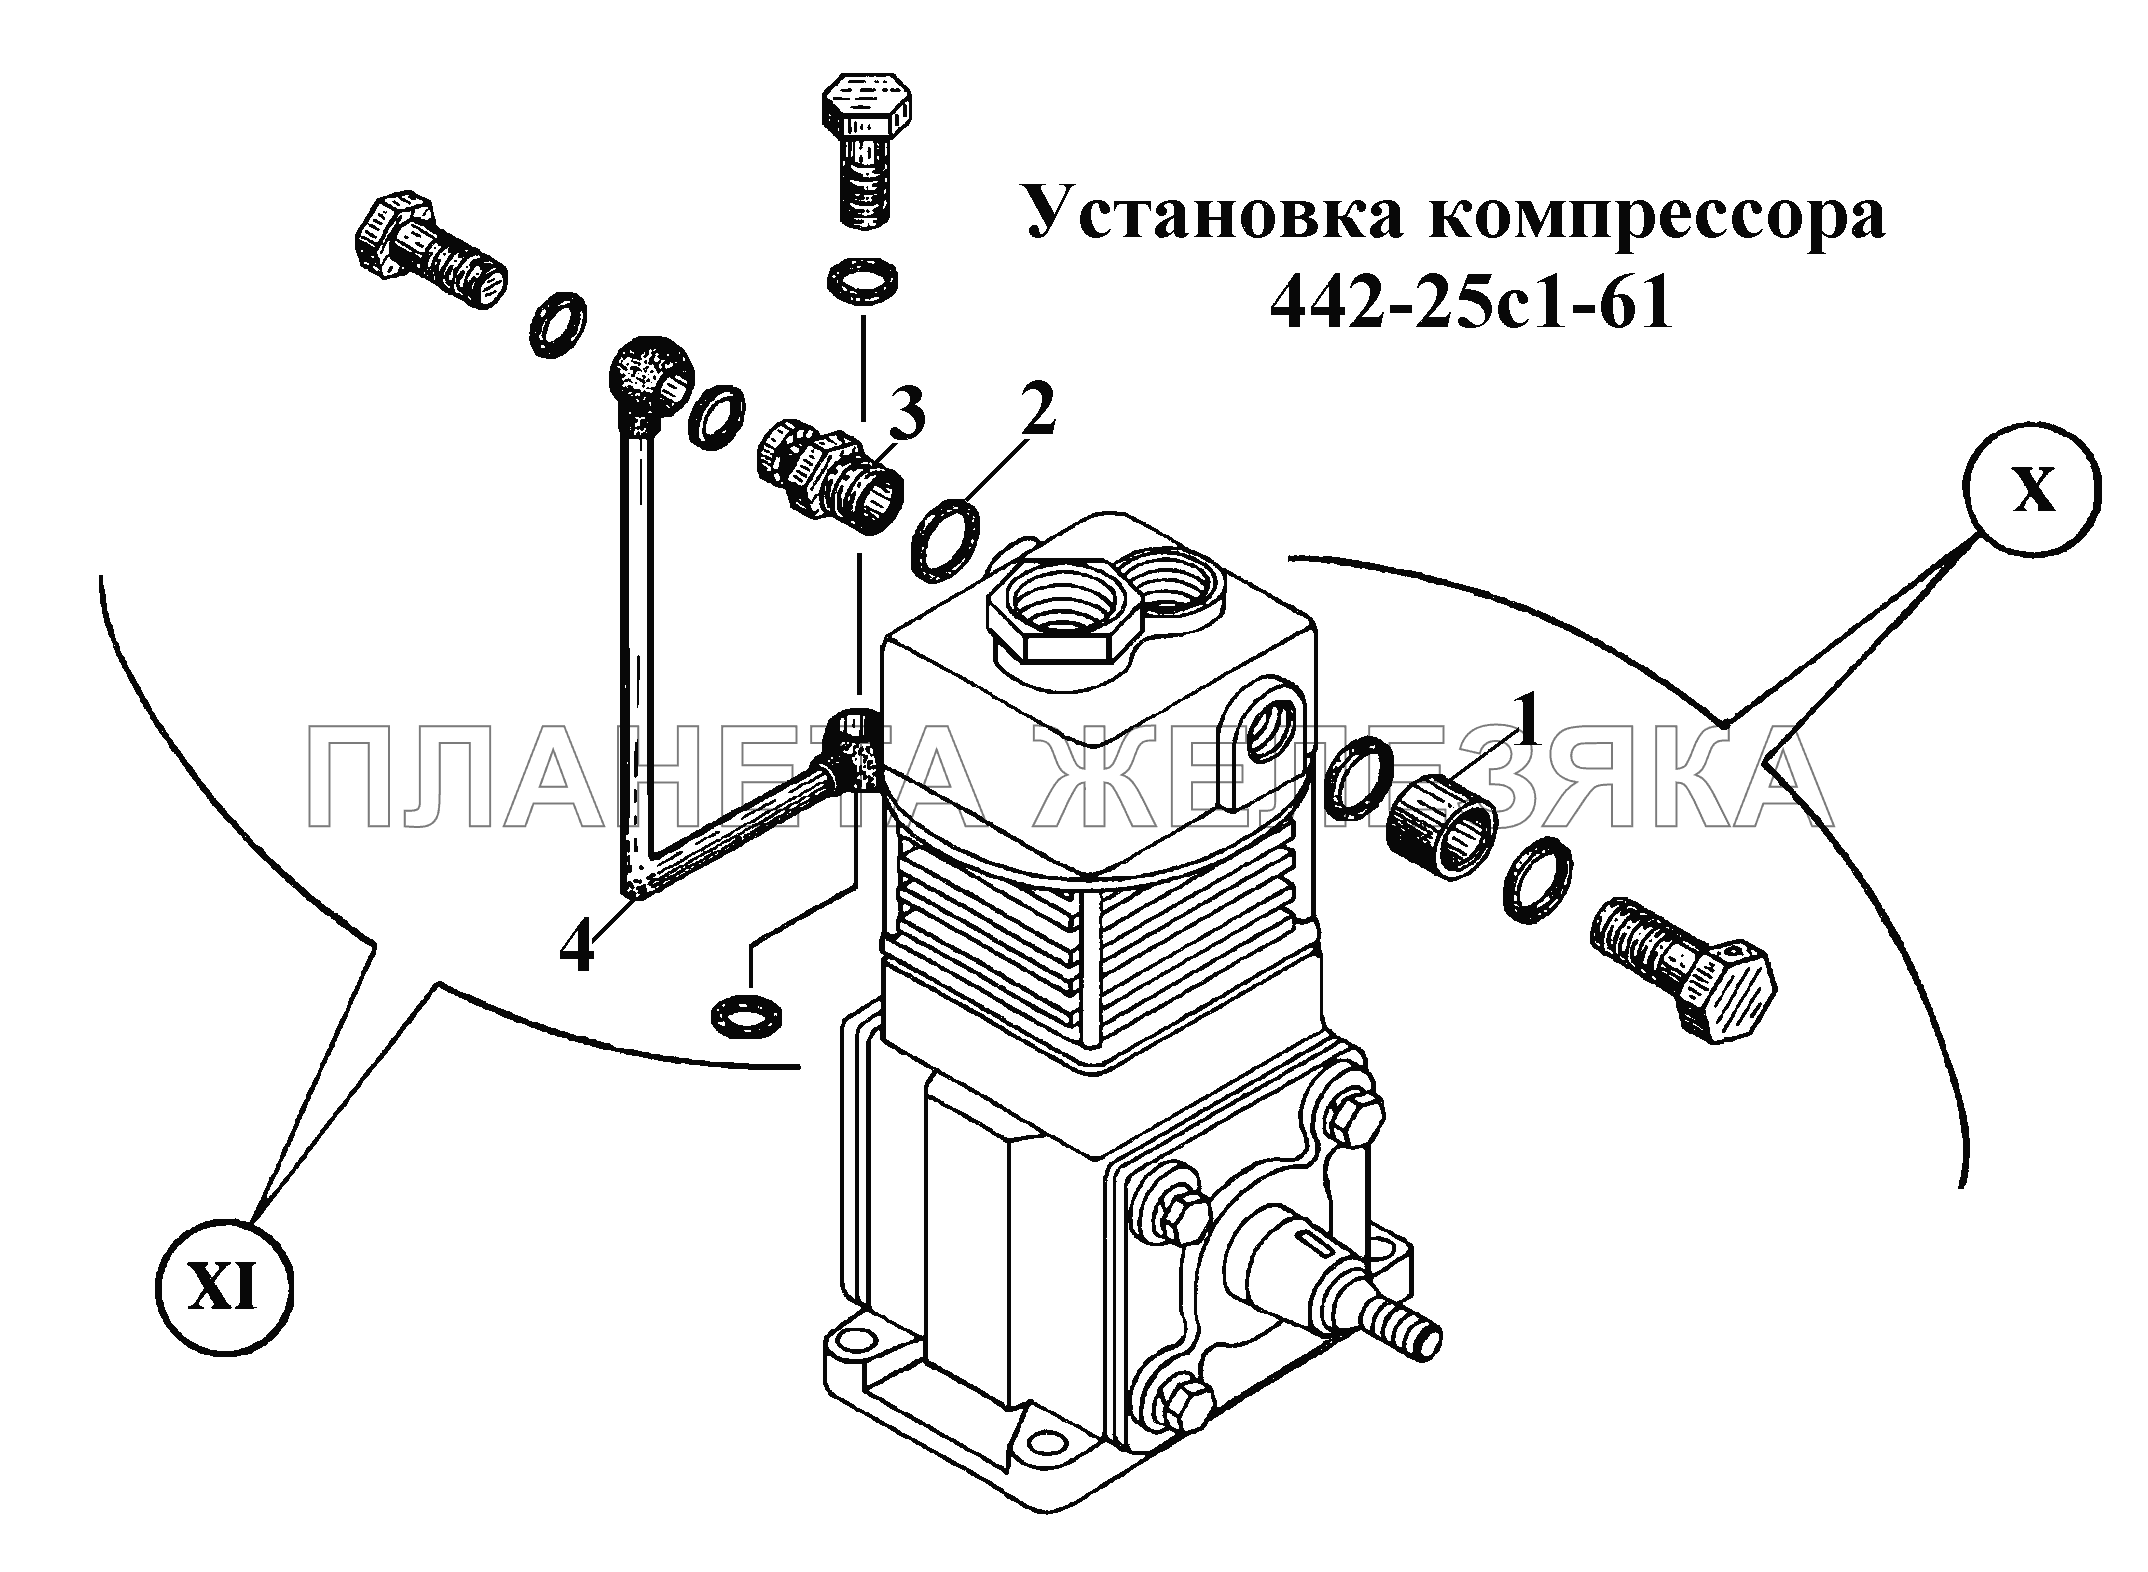 Установка компрессора  442-25с1-61 ВТ-100Д